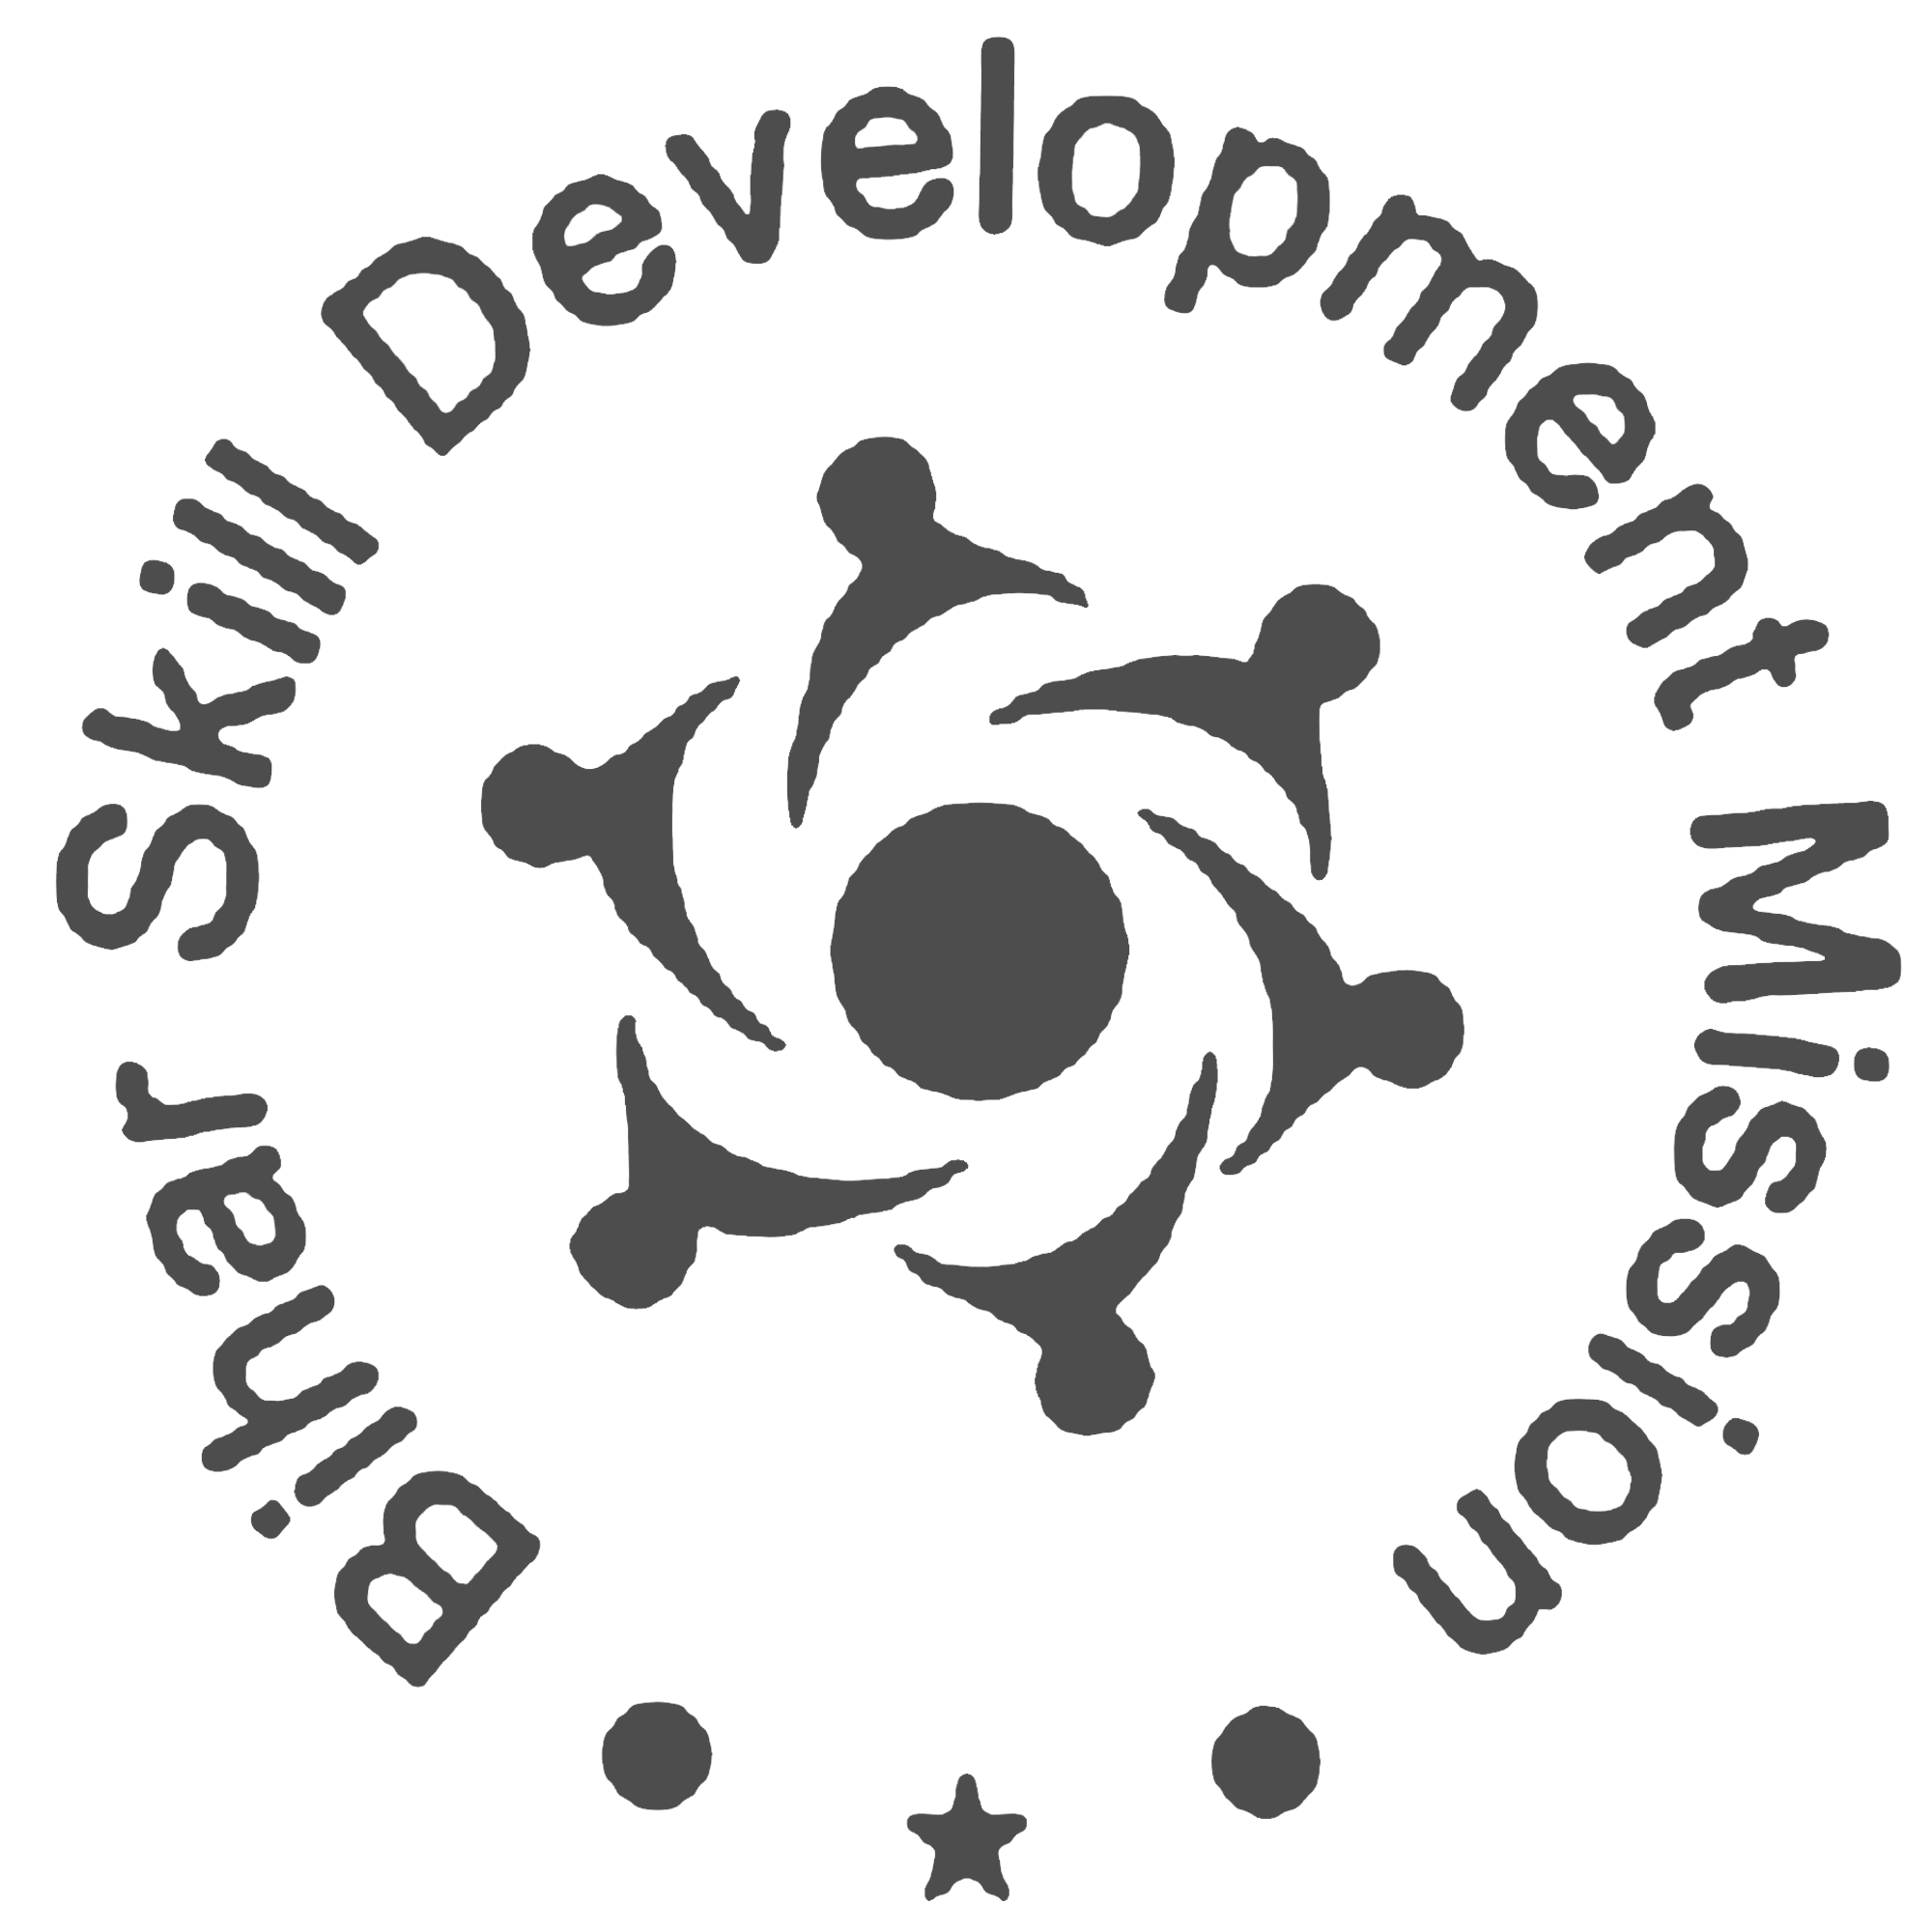 Bihar Skill Development Mission